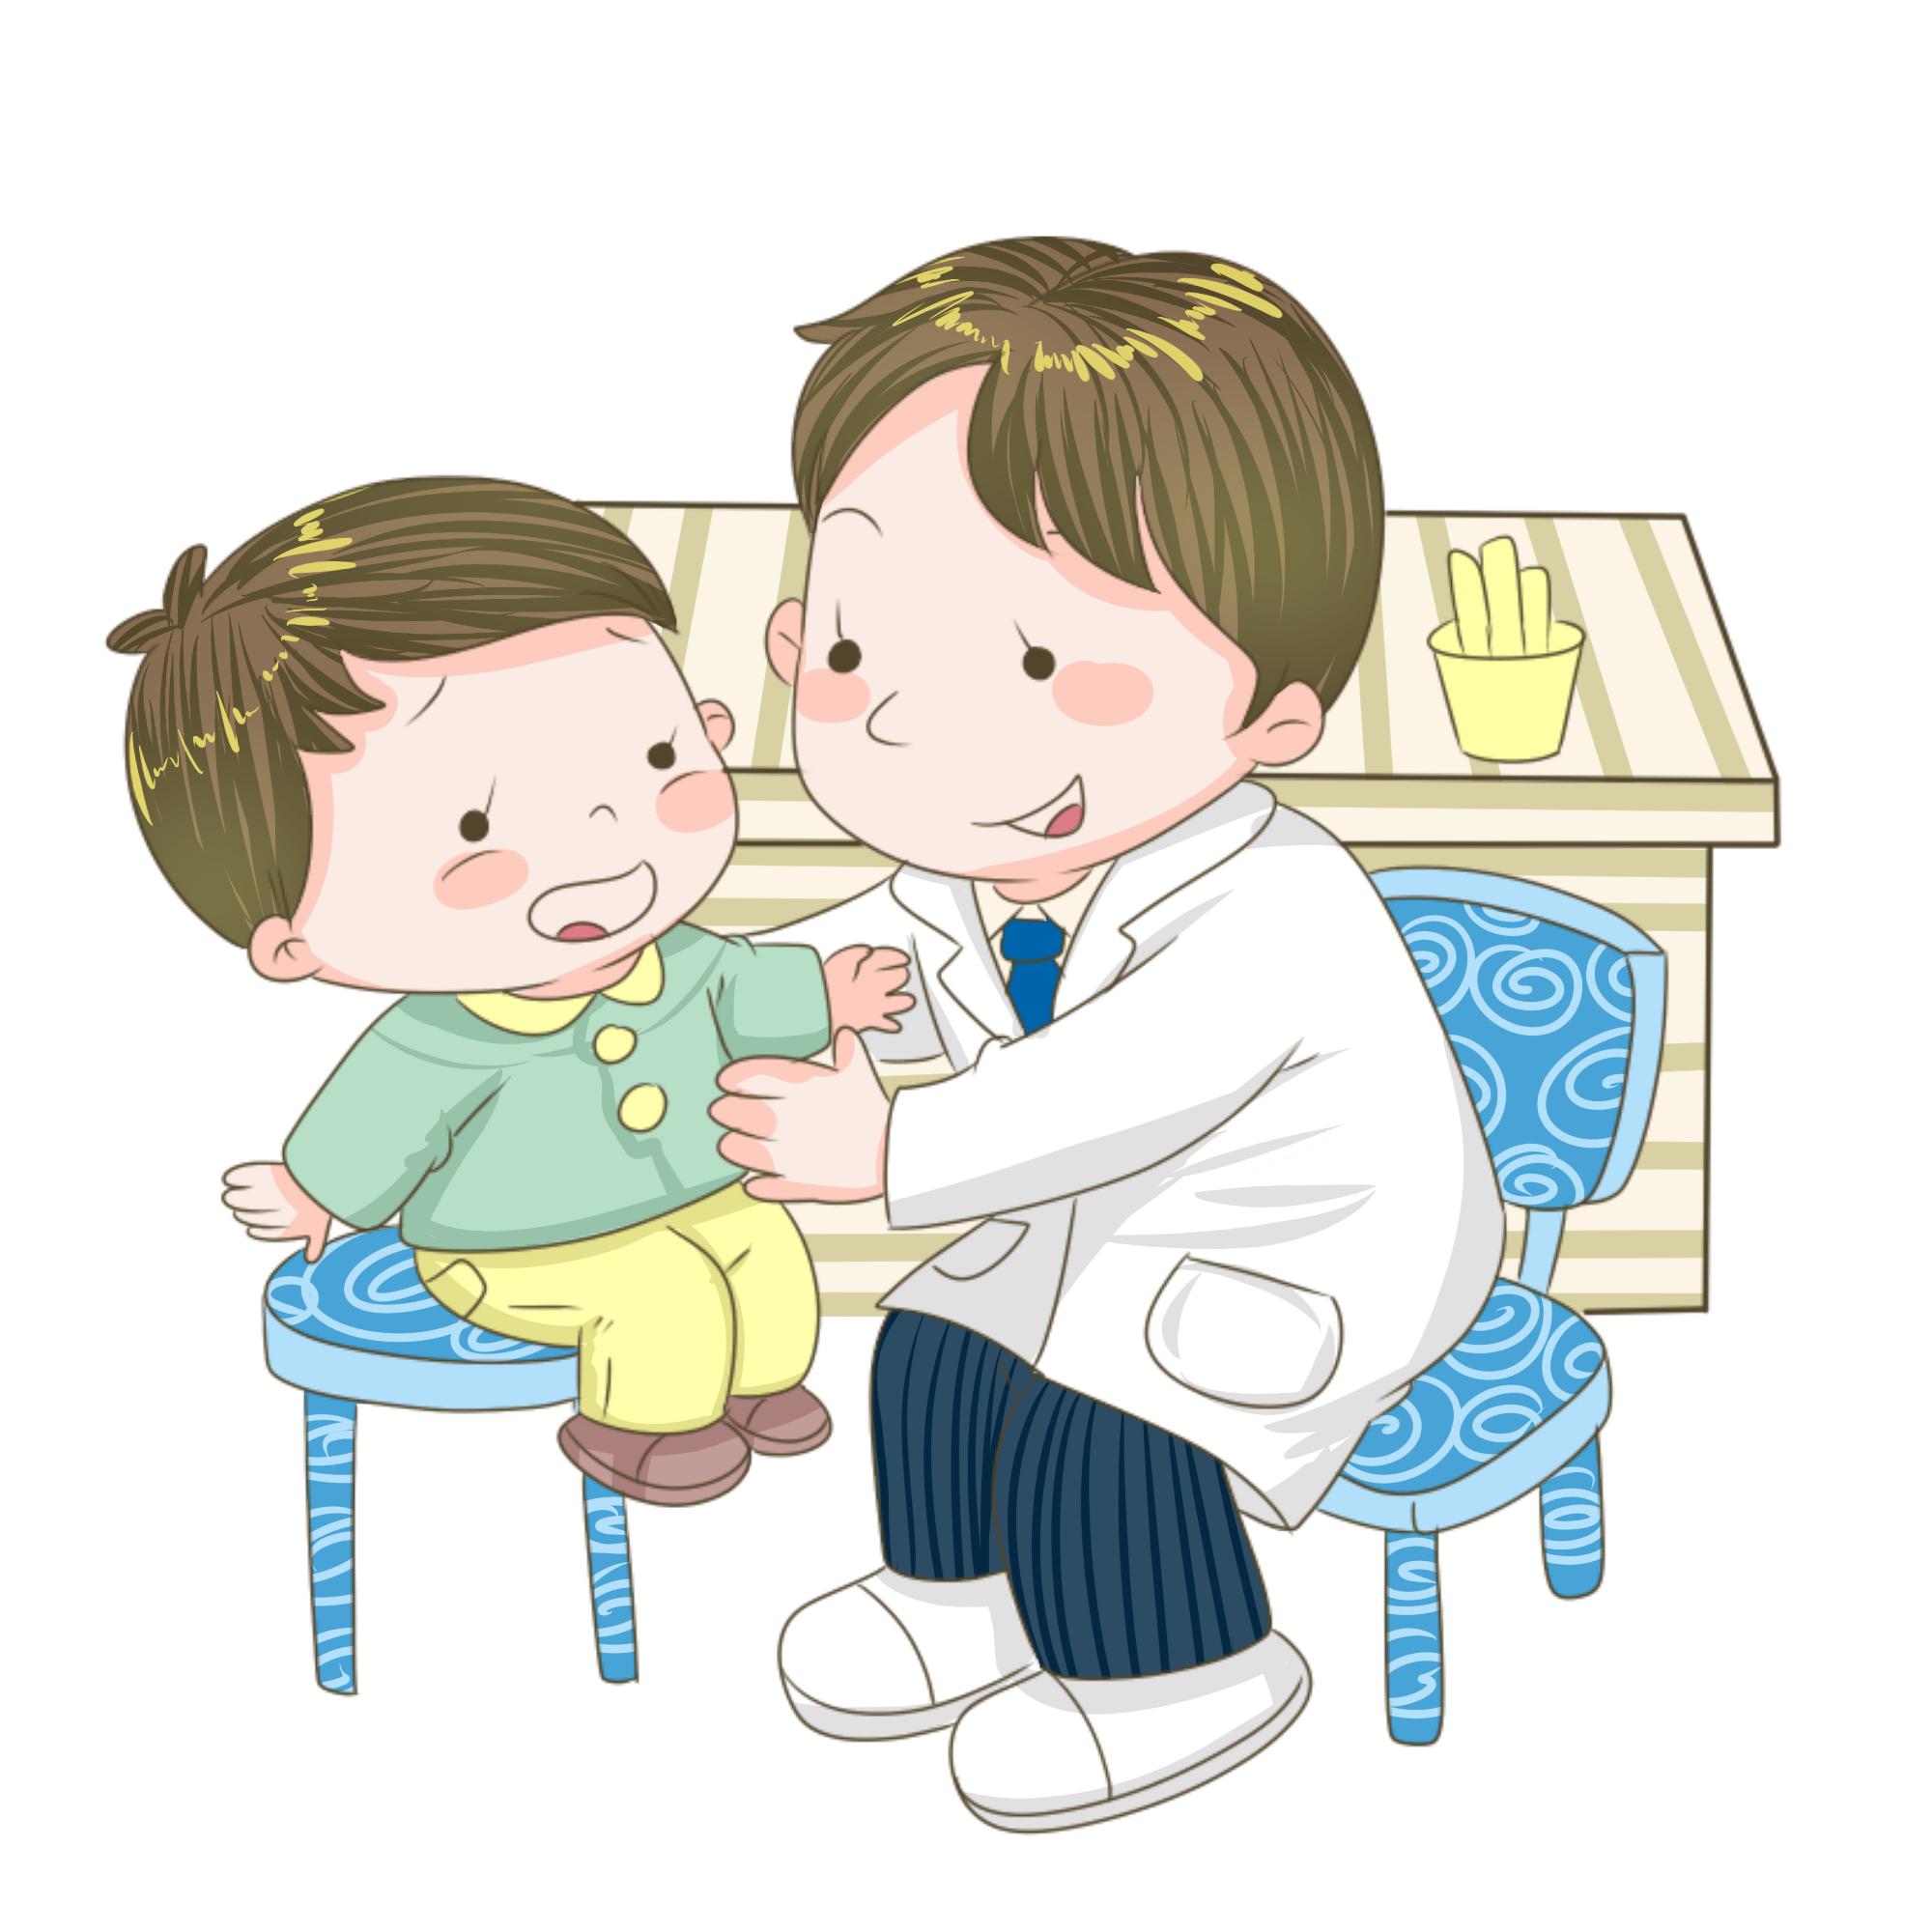 【义诊通知】6月1日,儿科专家陪你过个健康快乐的儿童节!